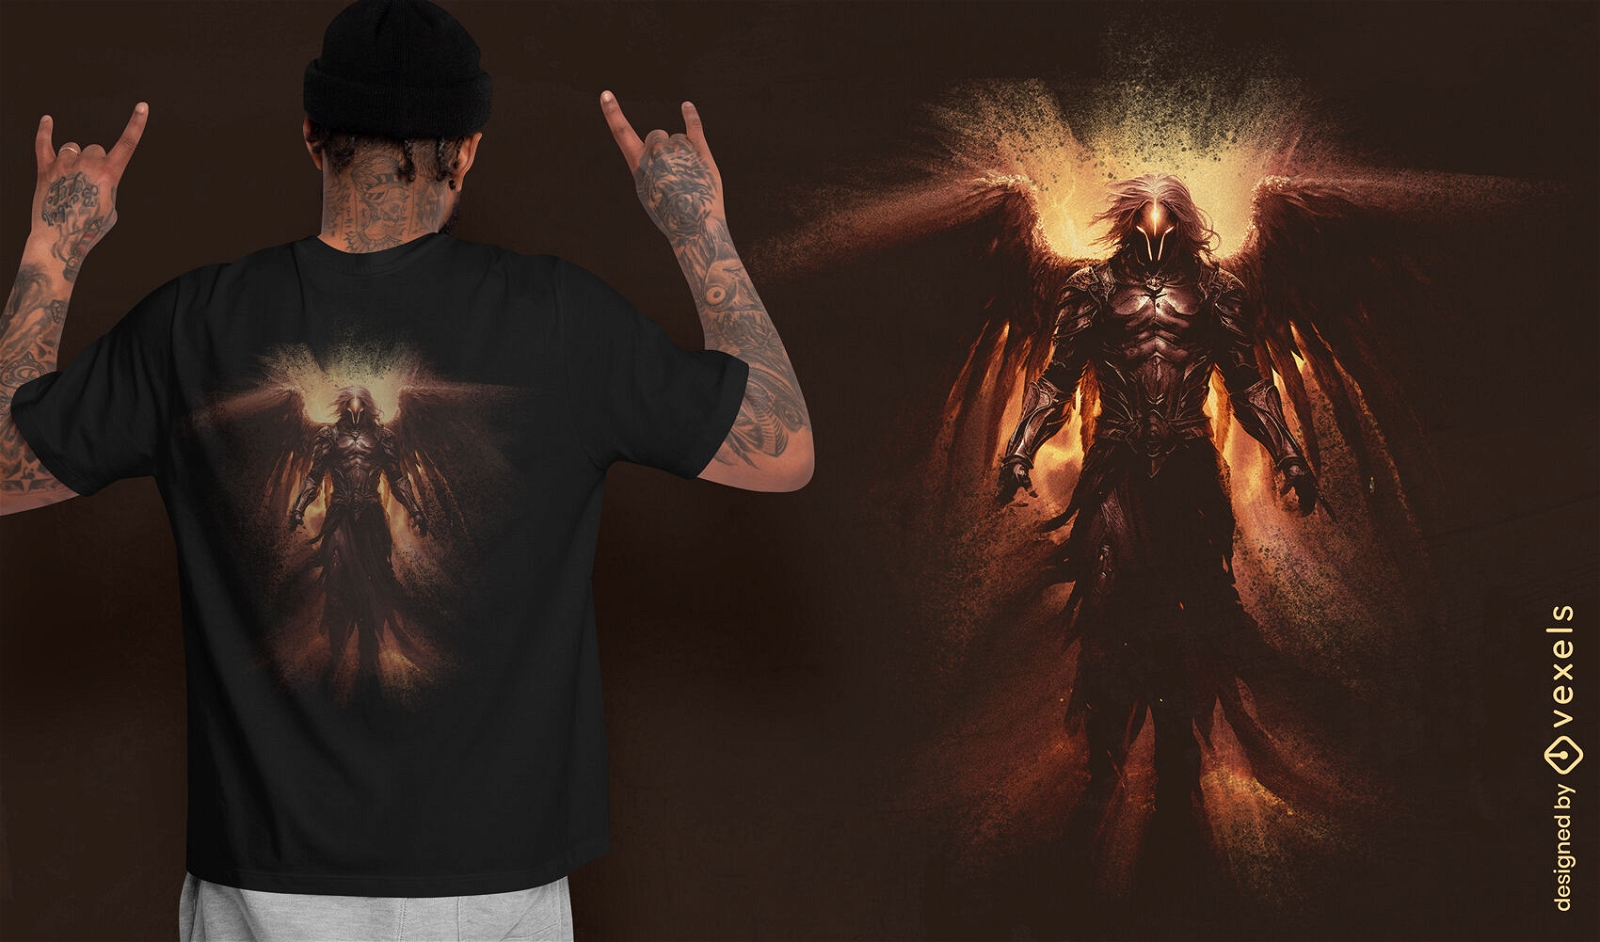 Diseño de camiseta mística ángel oscuro.